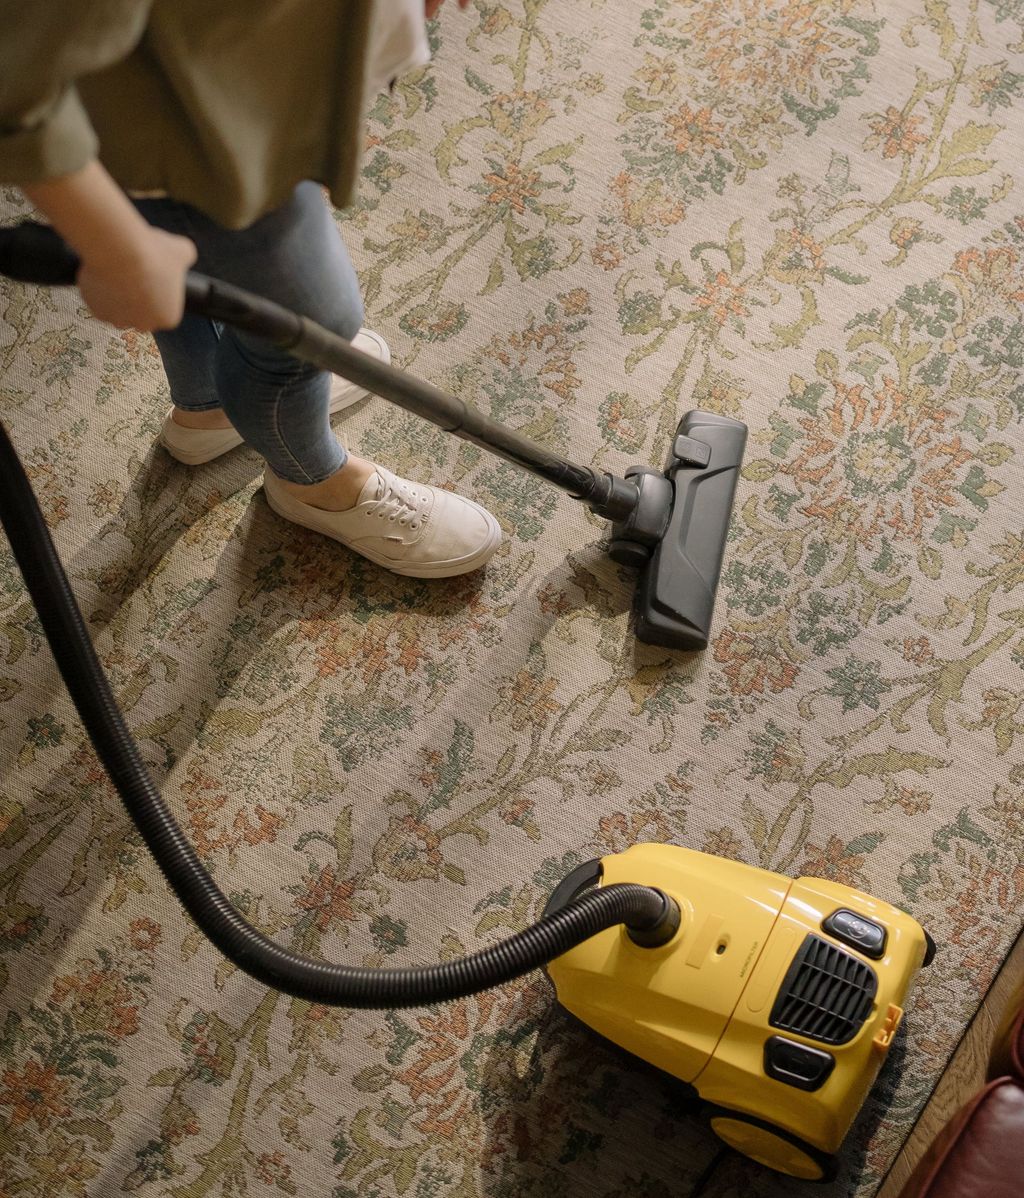 Utiliza la aspiradora para limpiar tu alfombra. FUENTE: Pexel